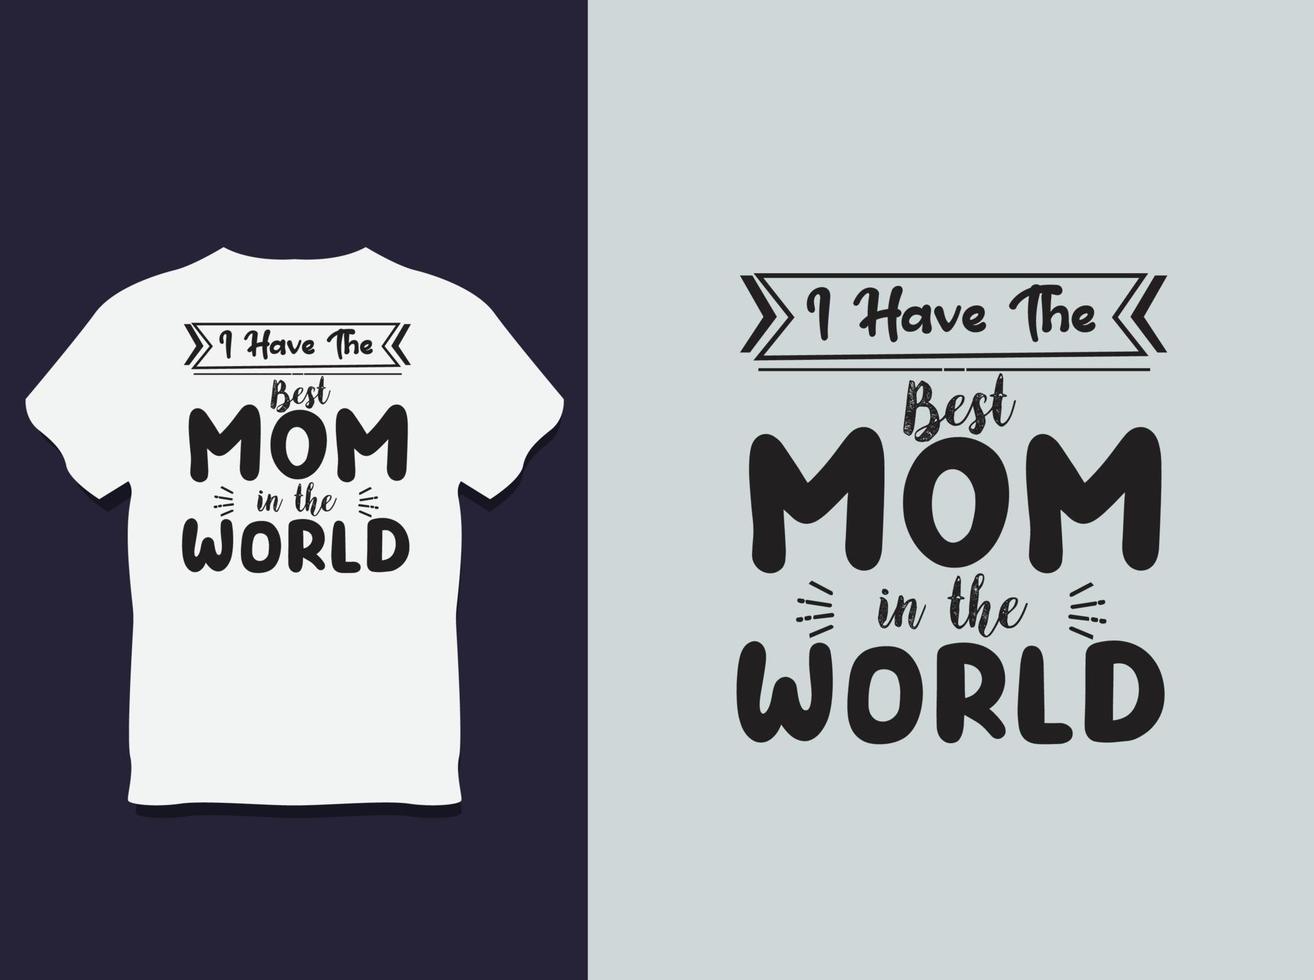 moeder dag typografie t overhemd ontwerp met vector